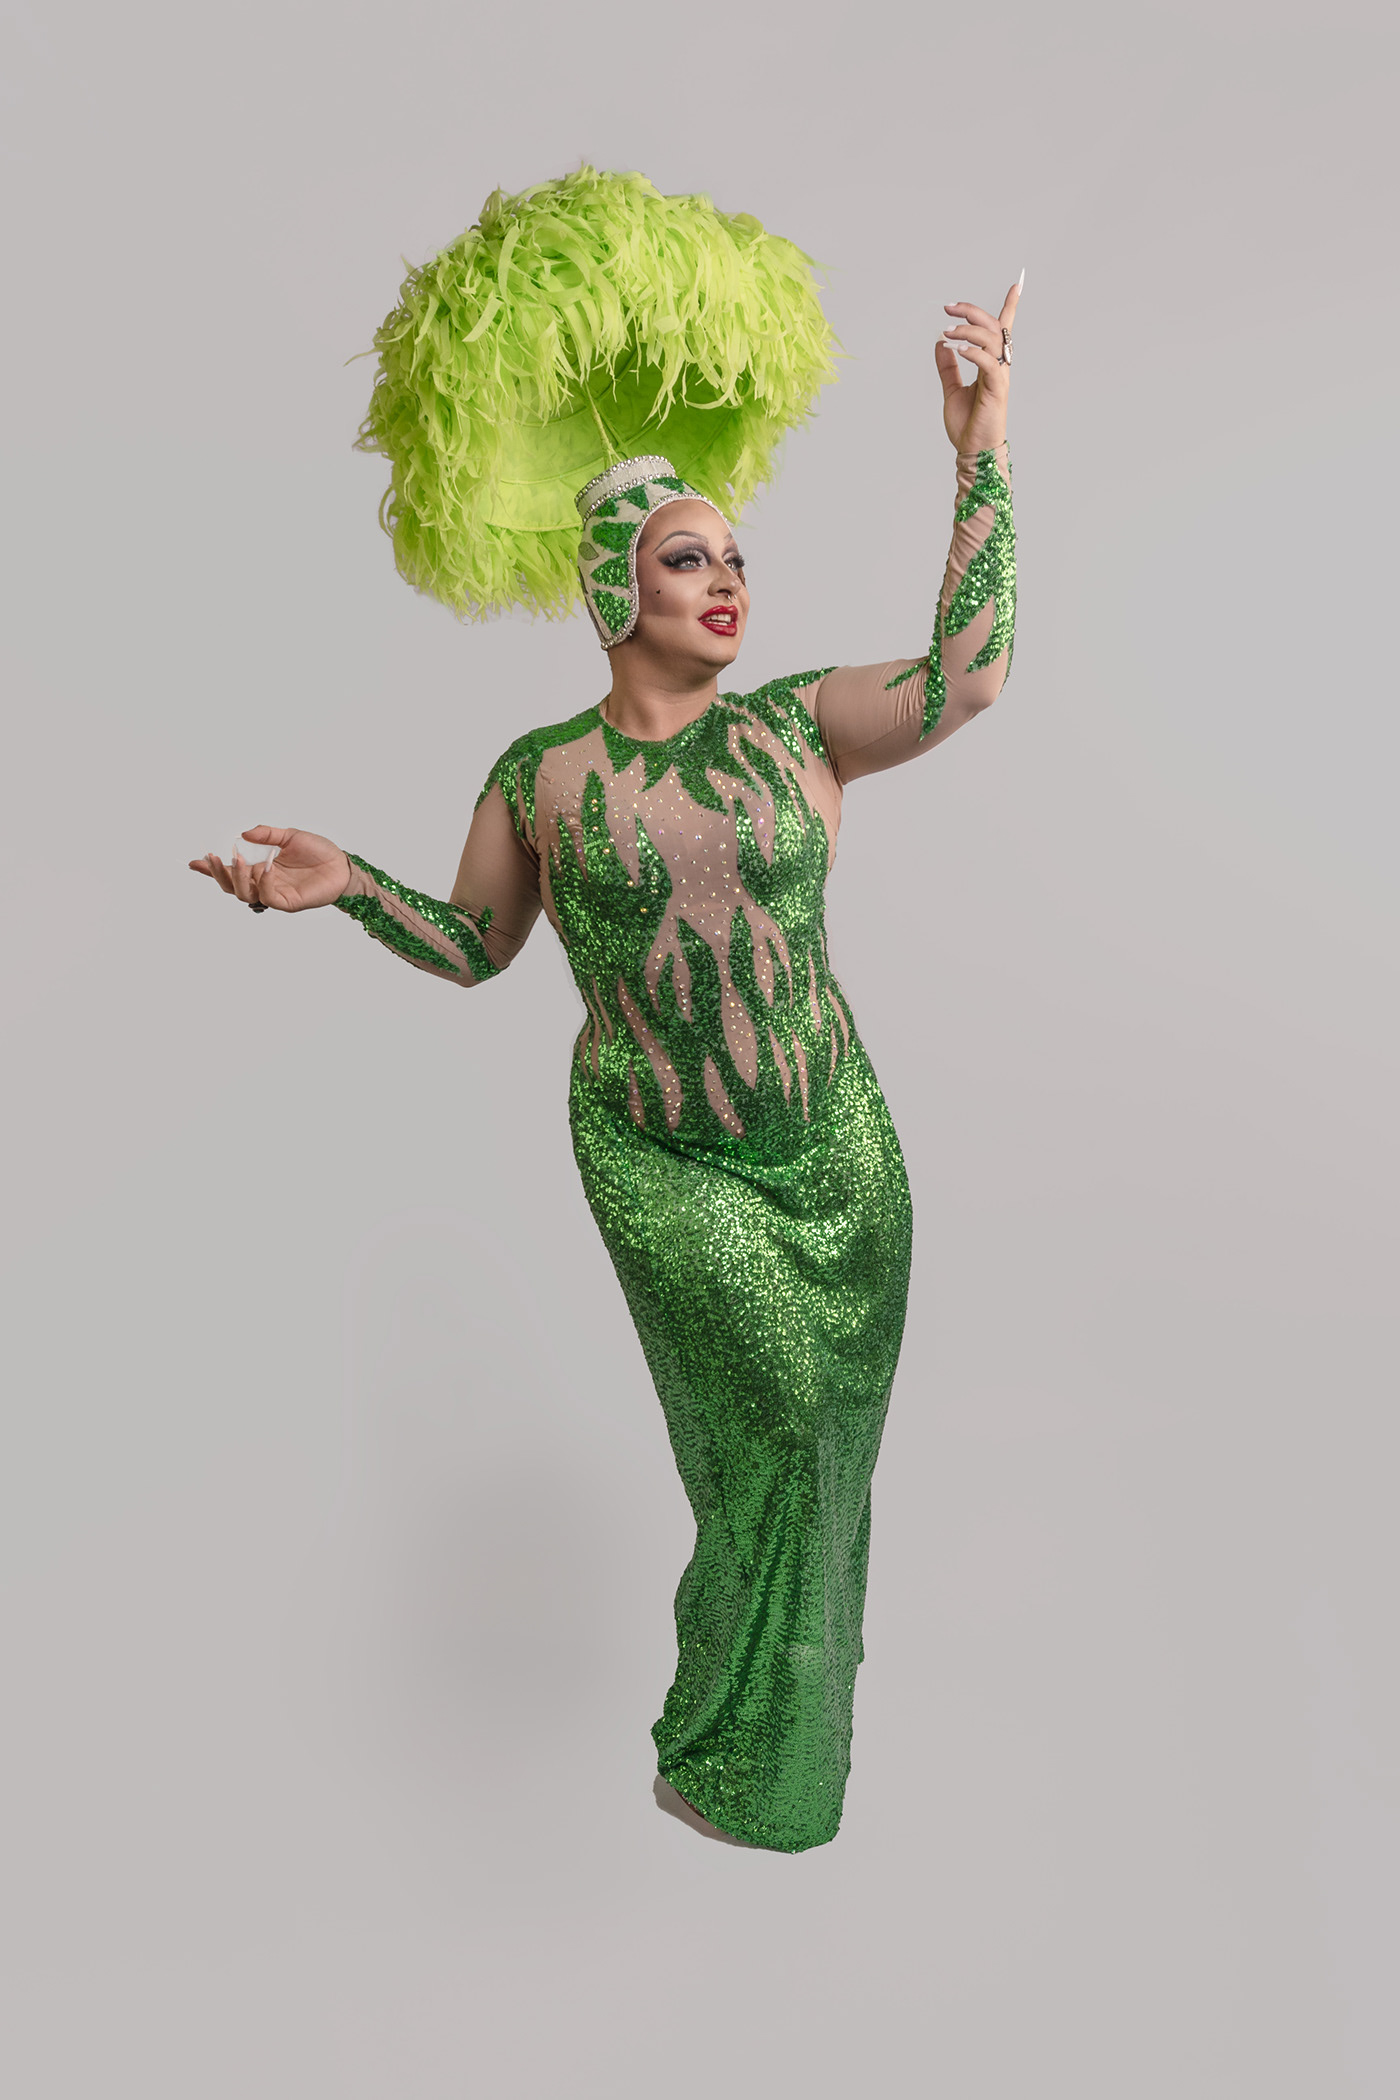 dragqueen LGBT pride queer art Graphic Designer Photography  photoshoot portrait beauty